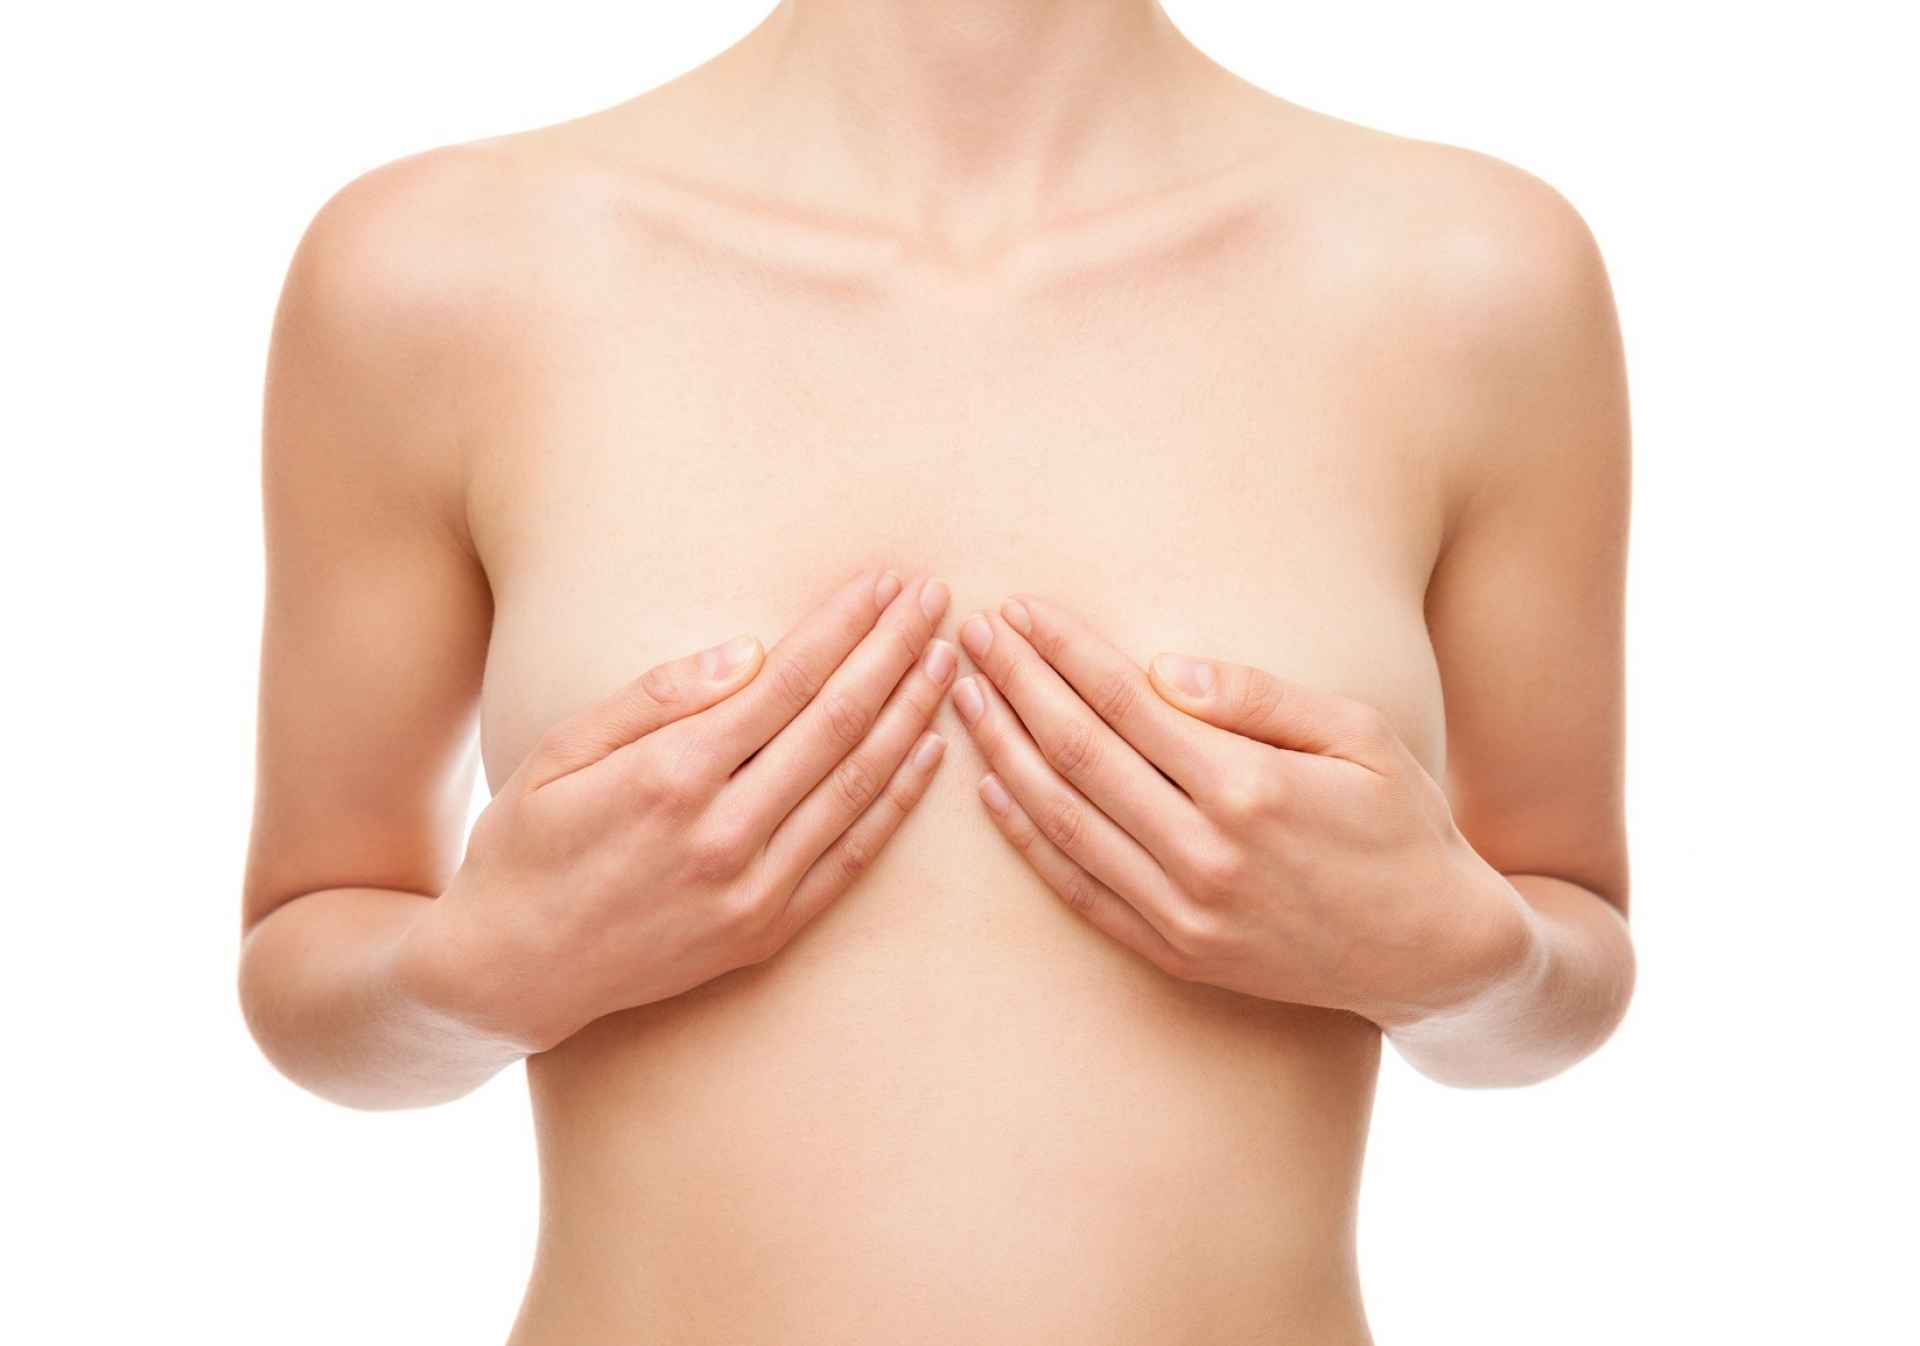 асимметрия груди женщин фото 95